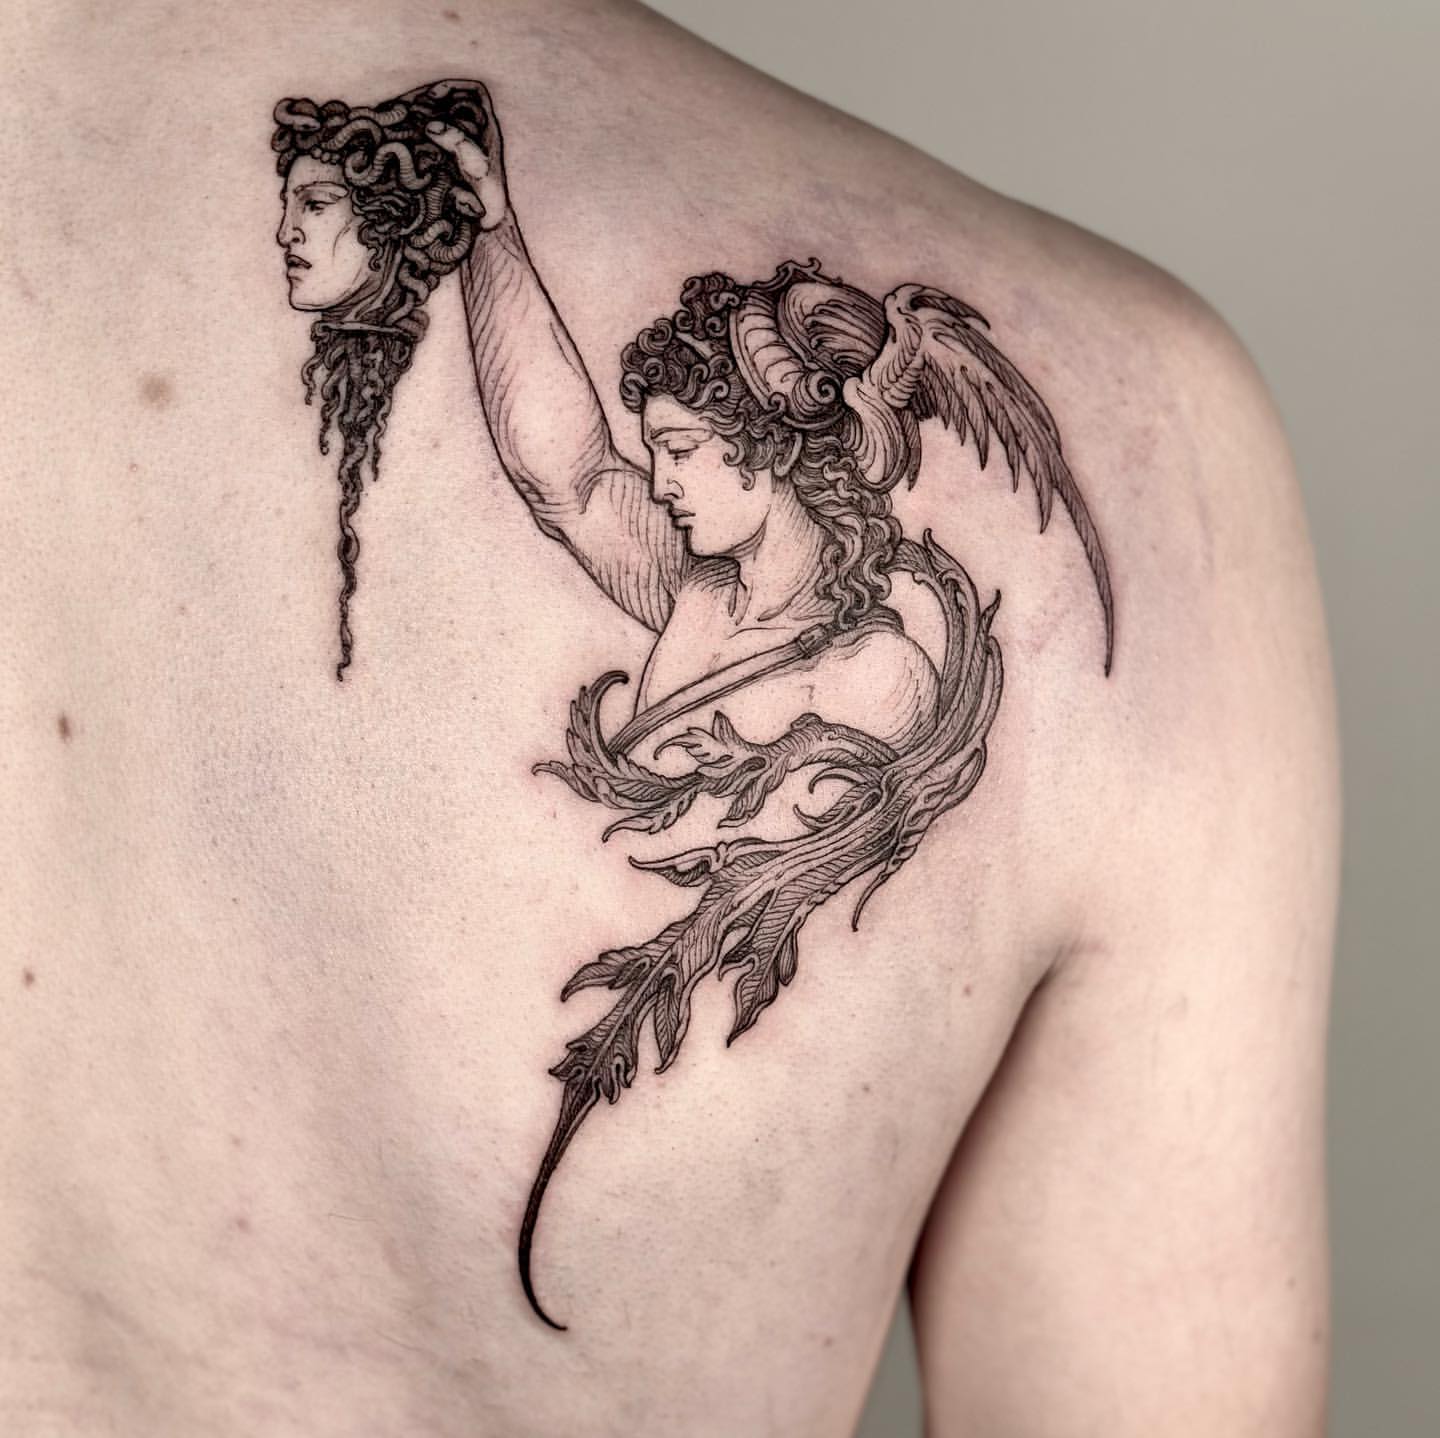 Tattoo uploaded by Bane Laban • Greek Mythology Medusa Going for a sleeve  #medusa #greekmythology • Tattoodo